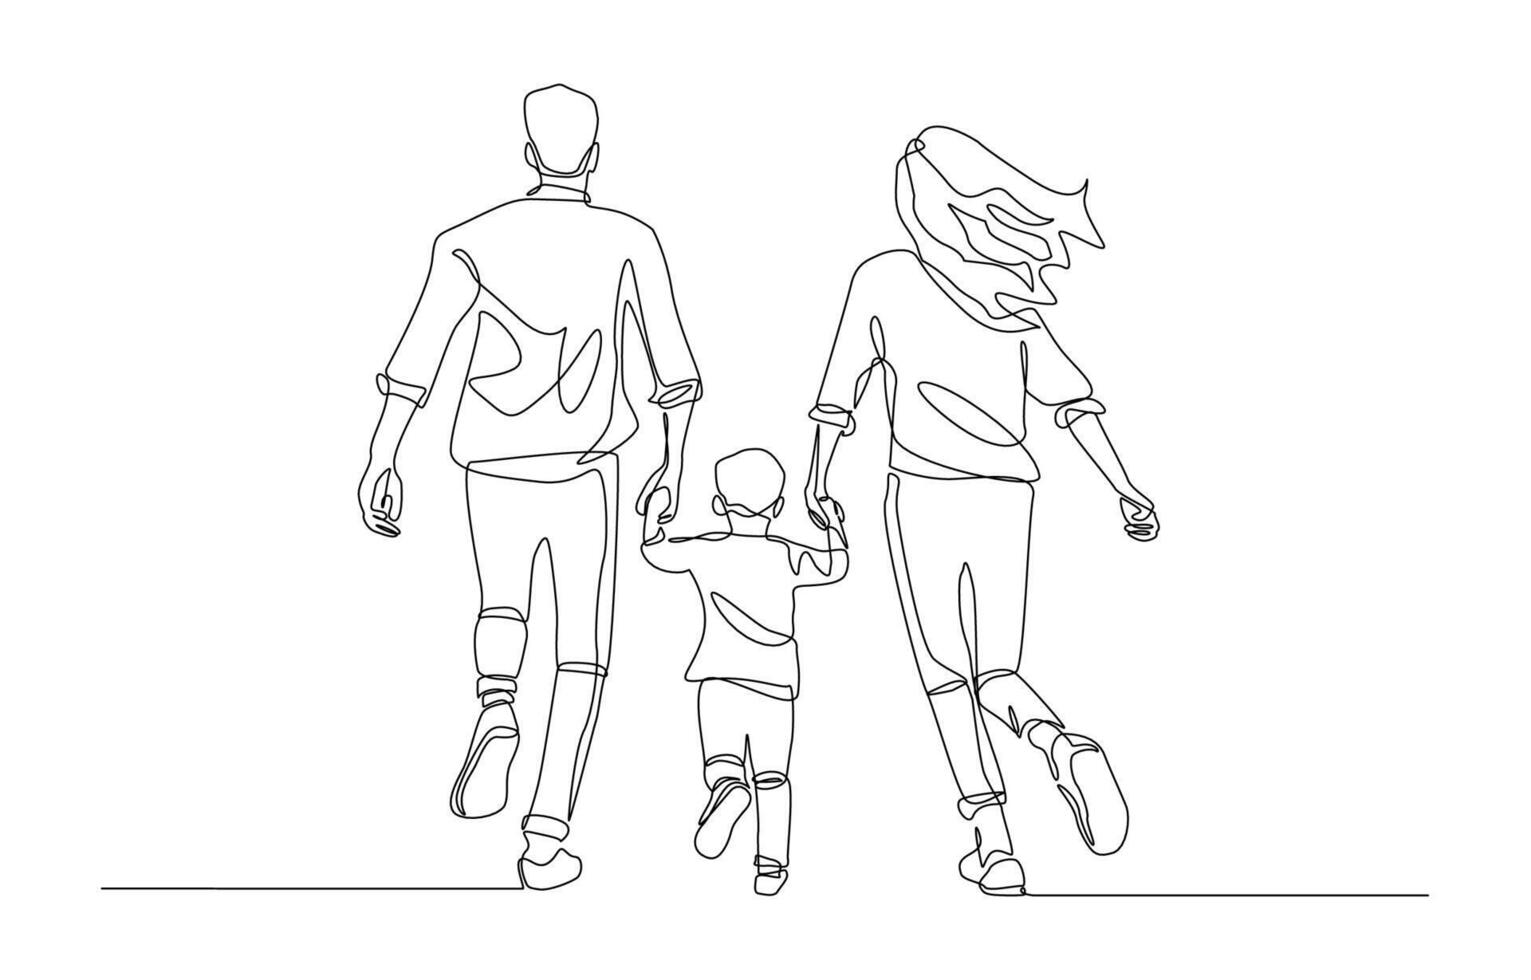 kontinuerlig ett linje teckning av föräldrar och barn innehav händer och löpning tillsammans, Lycklig familj begrepp, enda linje konst. vektor